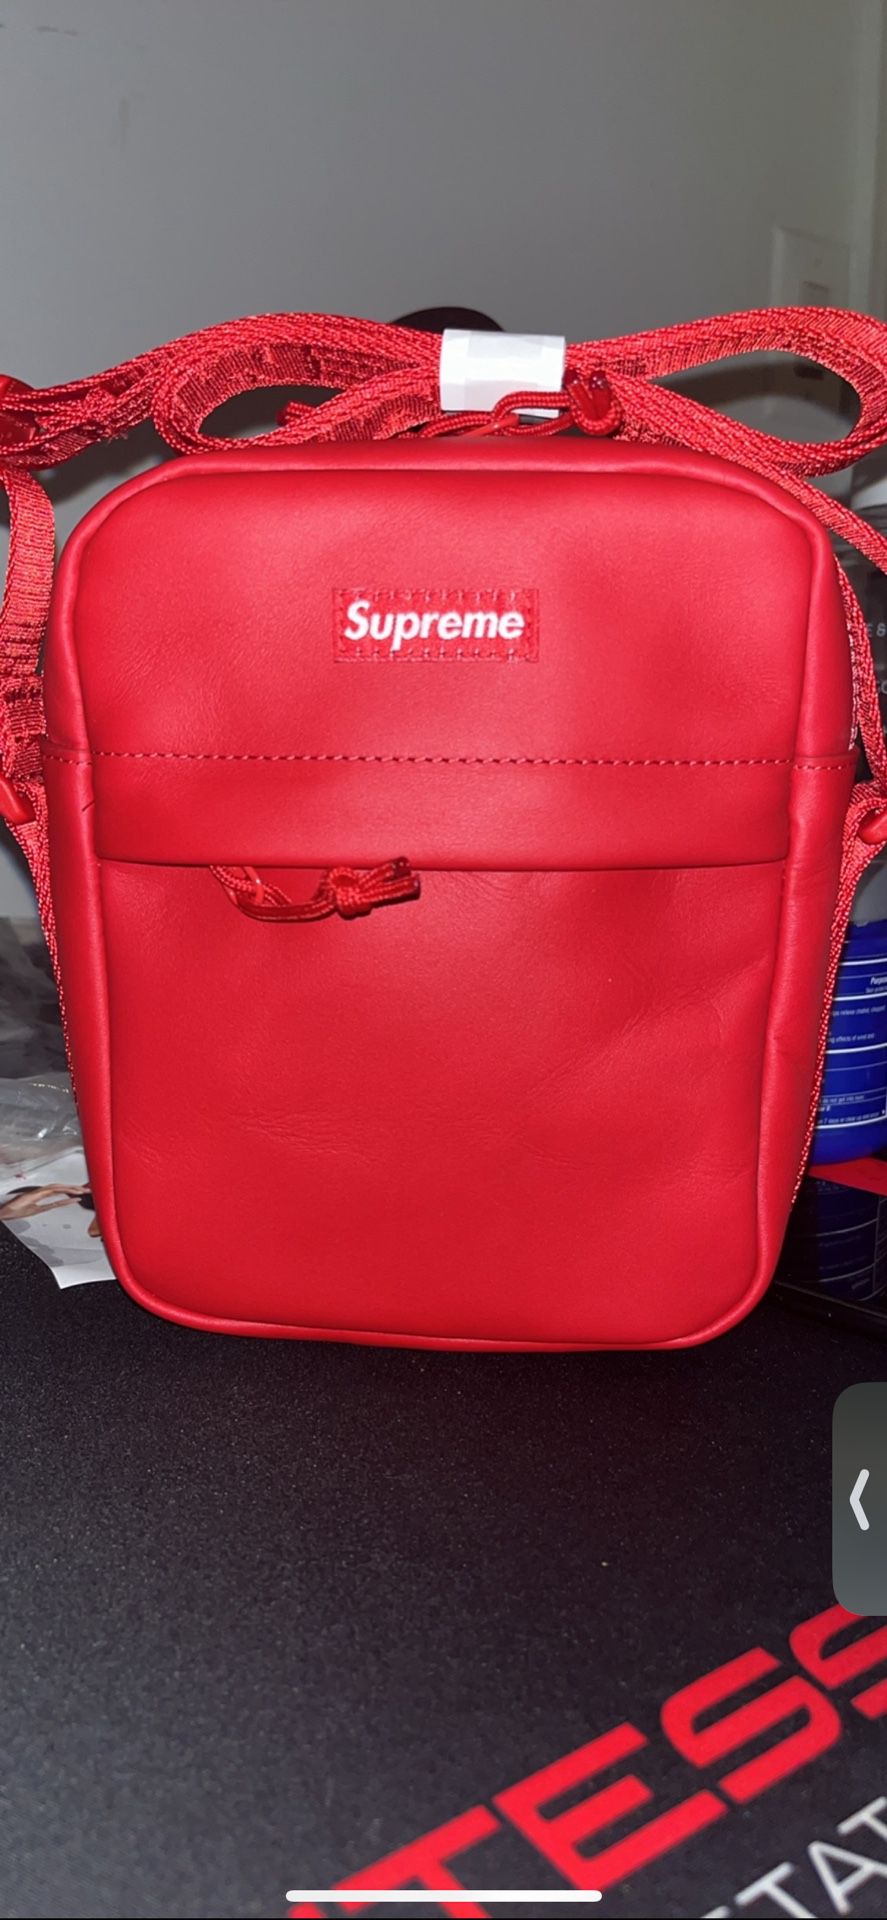 Red Supreme Shoulder Bag 